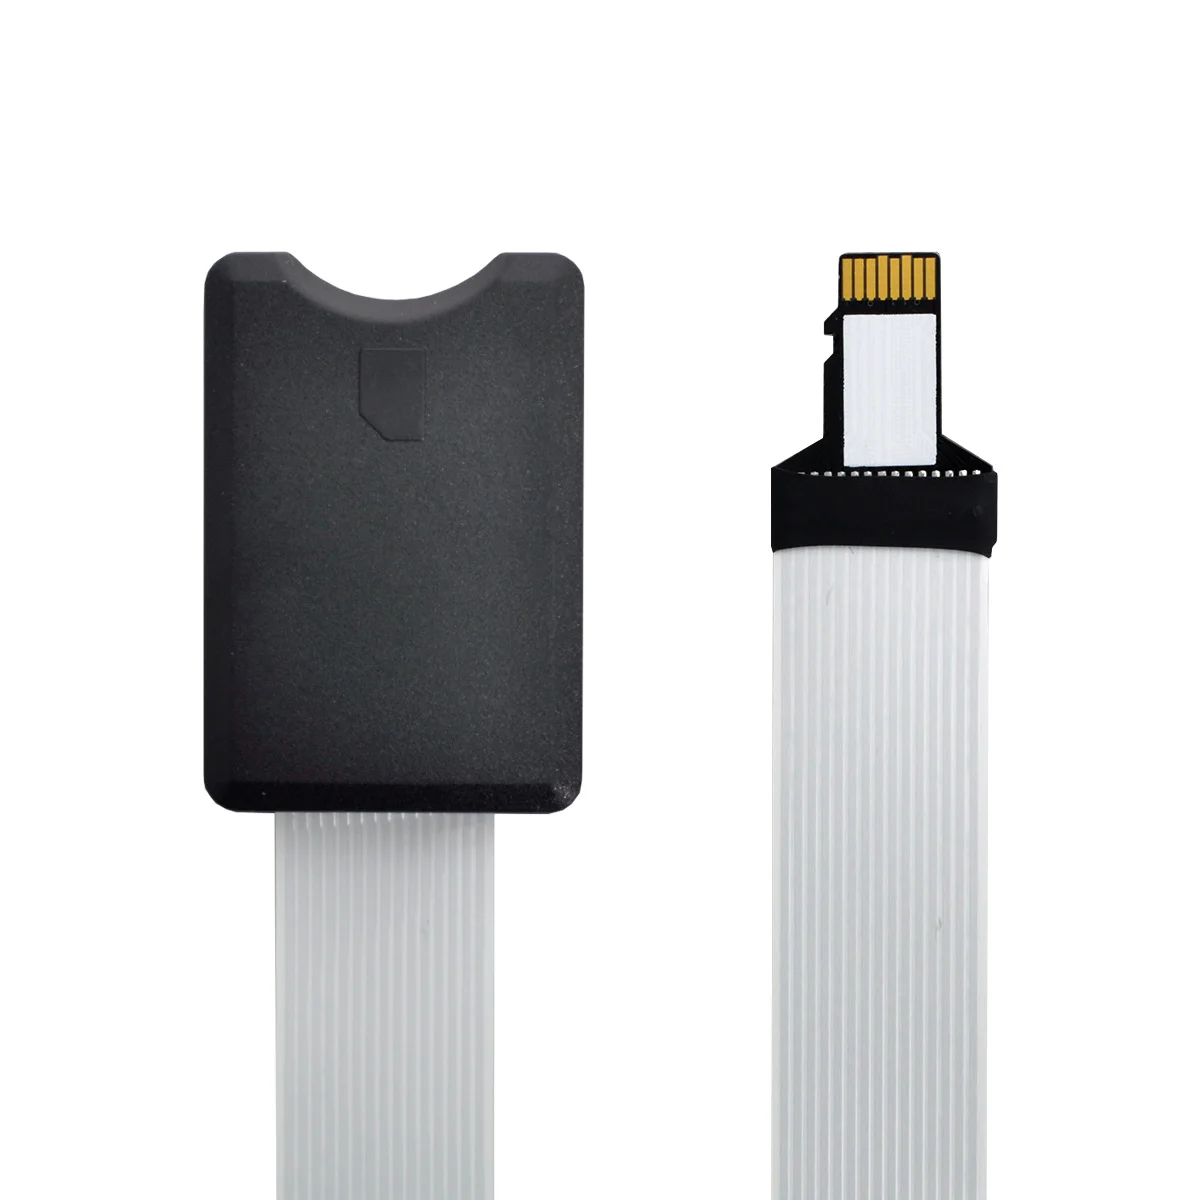 

Комплект карт памяти CY Micro-SD TF, удлинитель со штекером на гнездо SD, мягкий плоский удлинитель кабеля FPC, 25 см